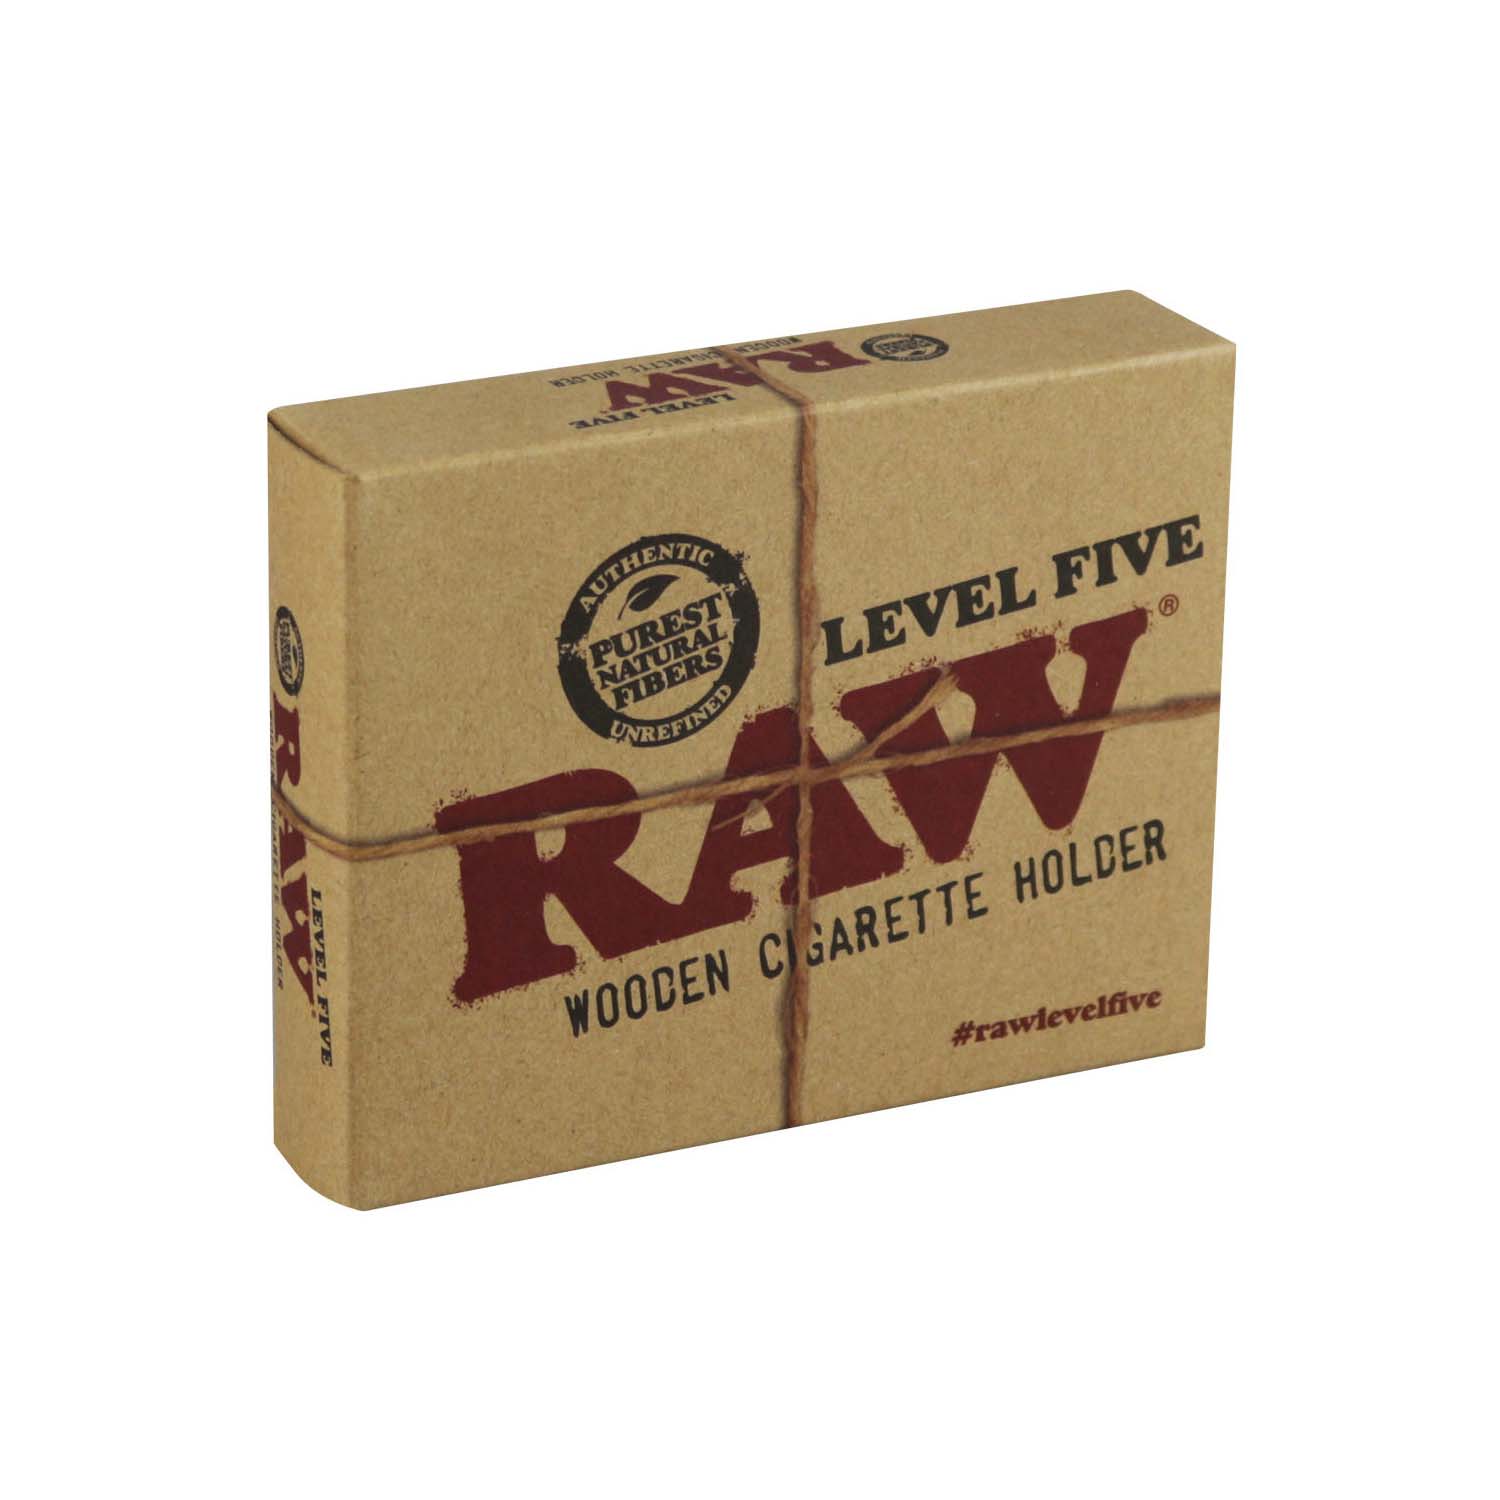 Raw Level 5 Wooden Cigarette Holder